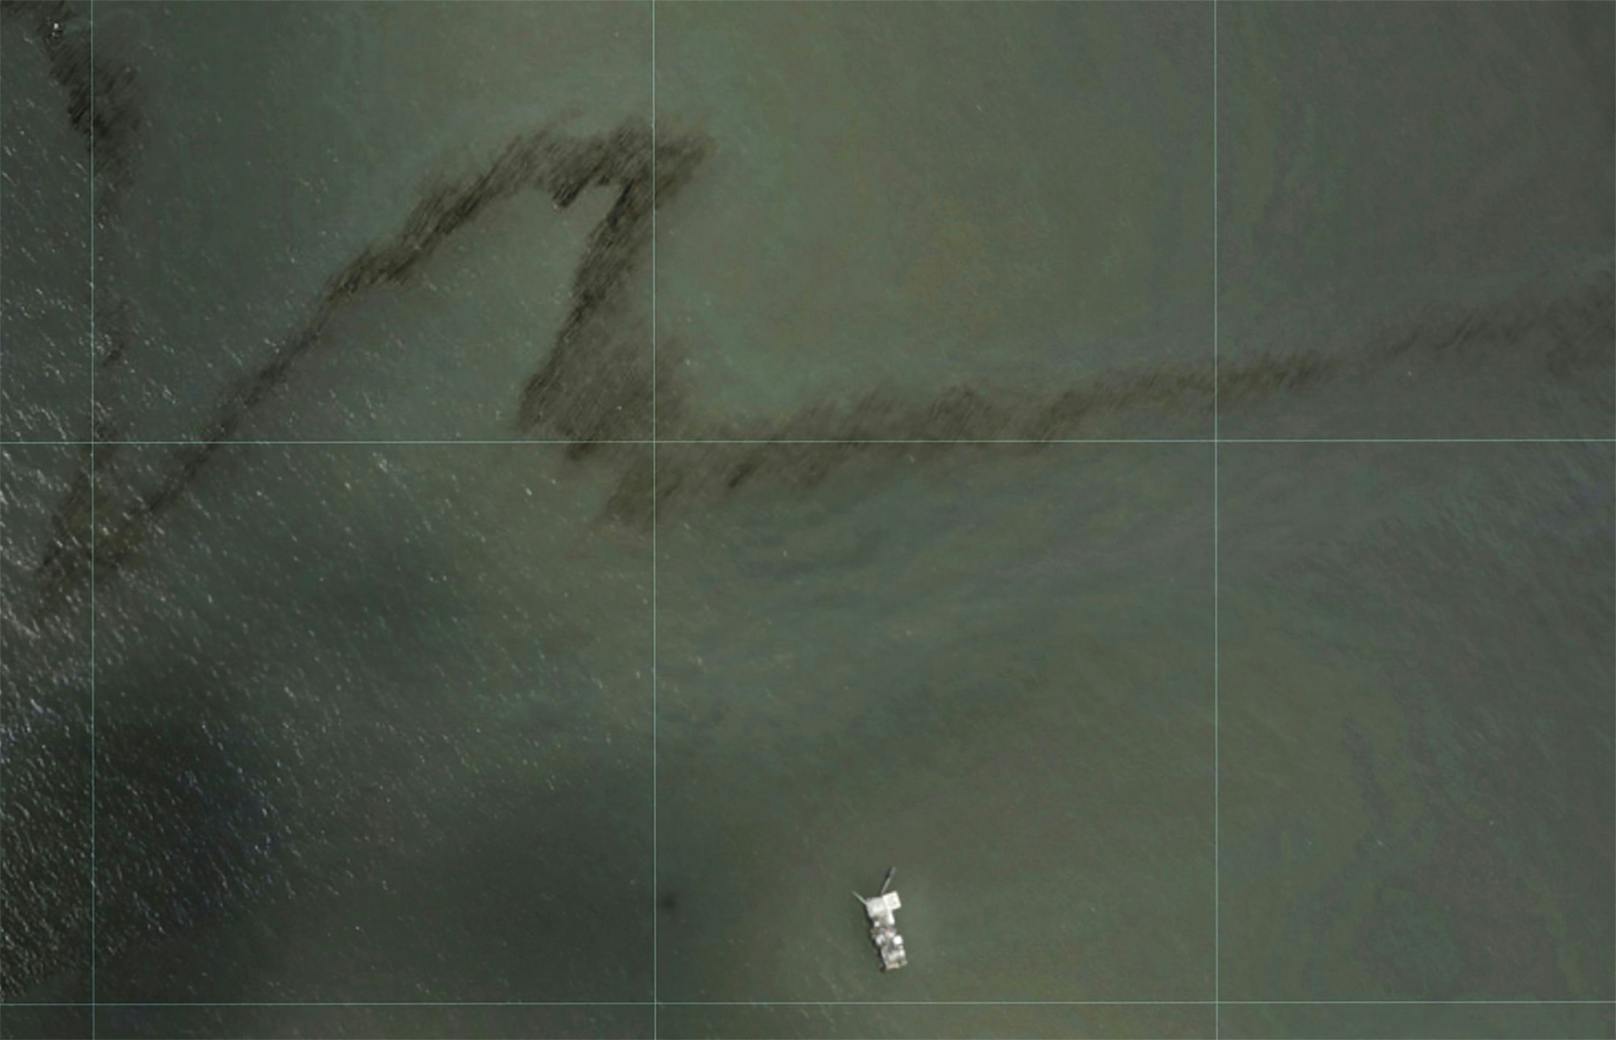 Ölteppich im Golf von Mexiko entdeckt